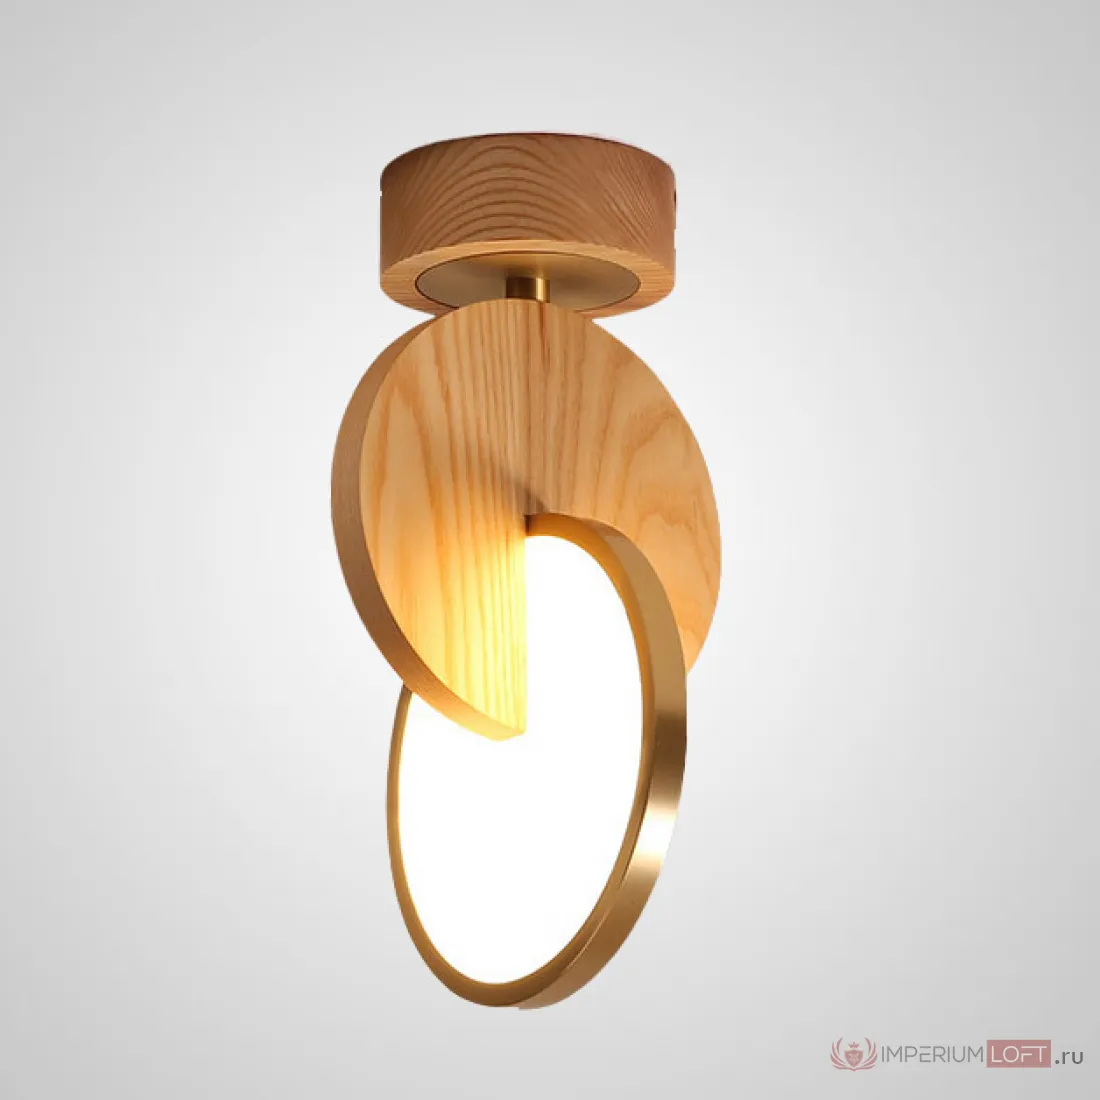 Ch lighting. Светильник Eclipse Wood. Настенный светильник в форме 2 пересекающихся колец купить.